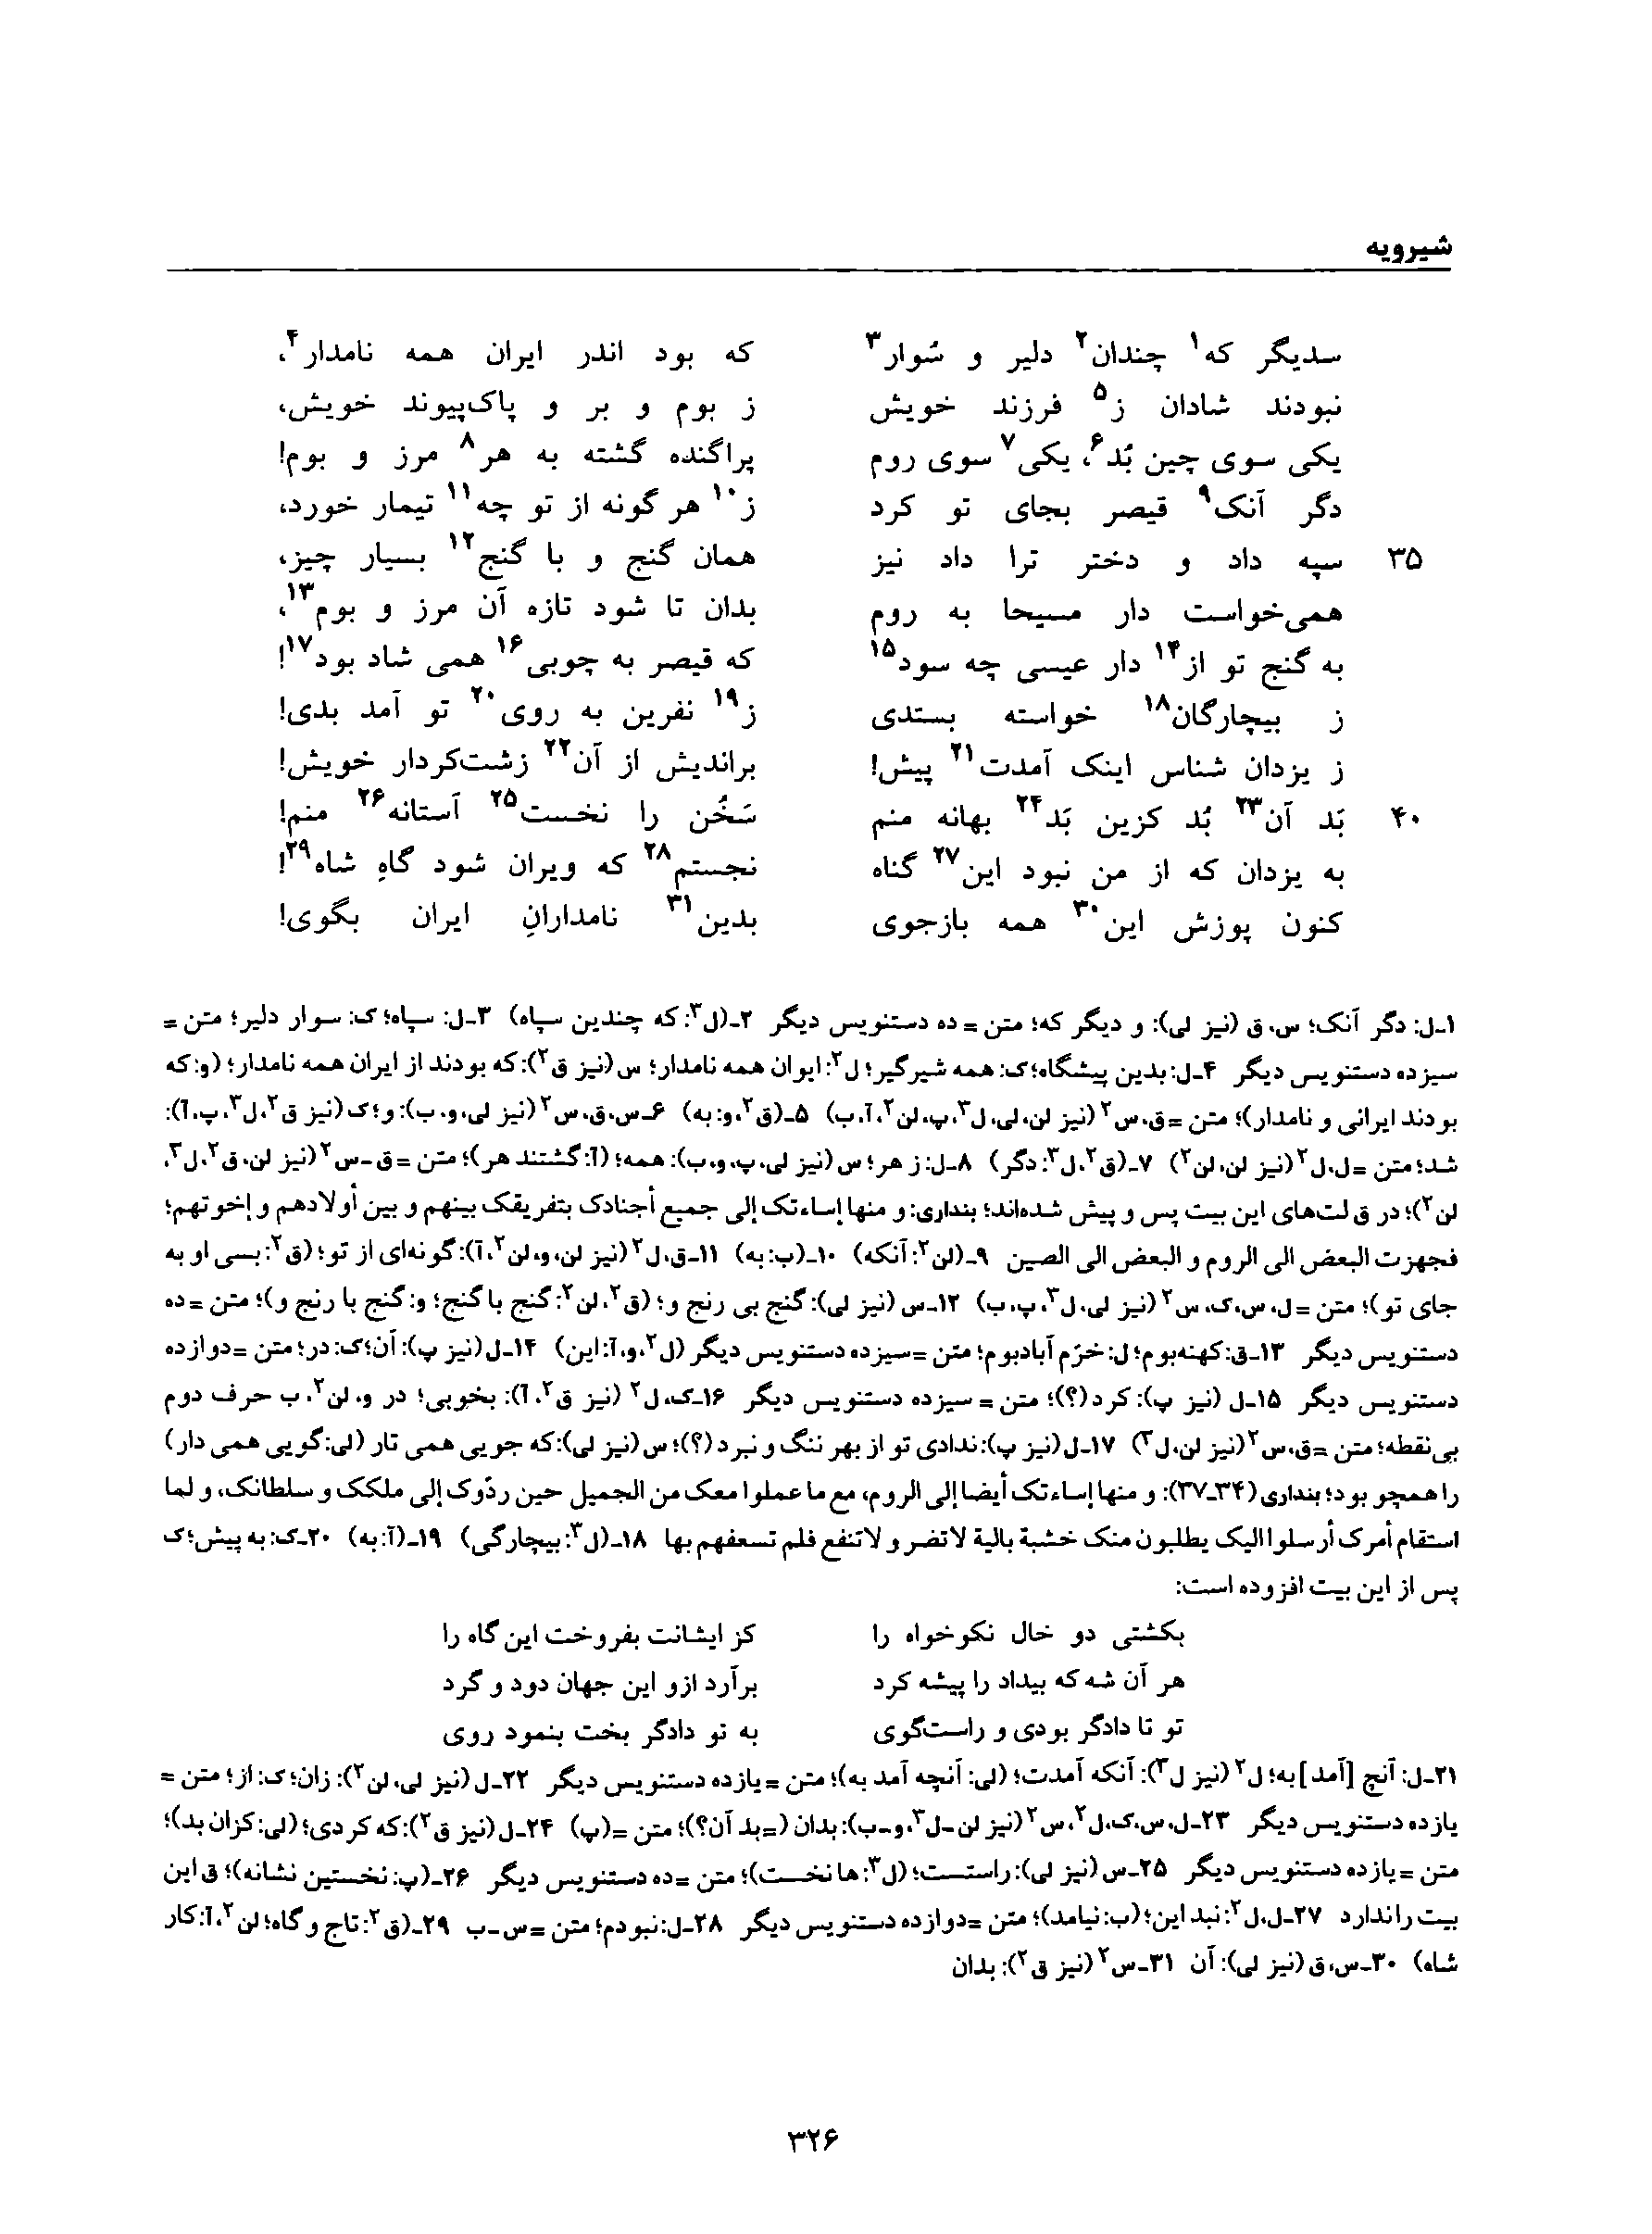 vol. 8, p. 326